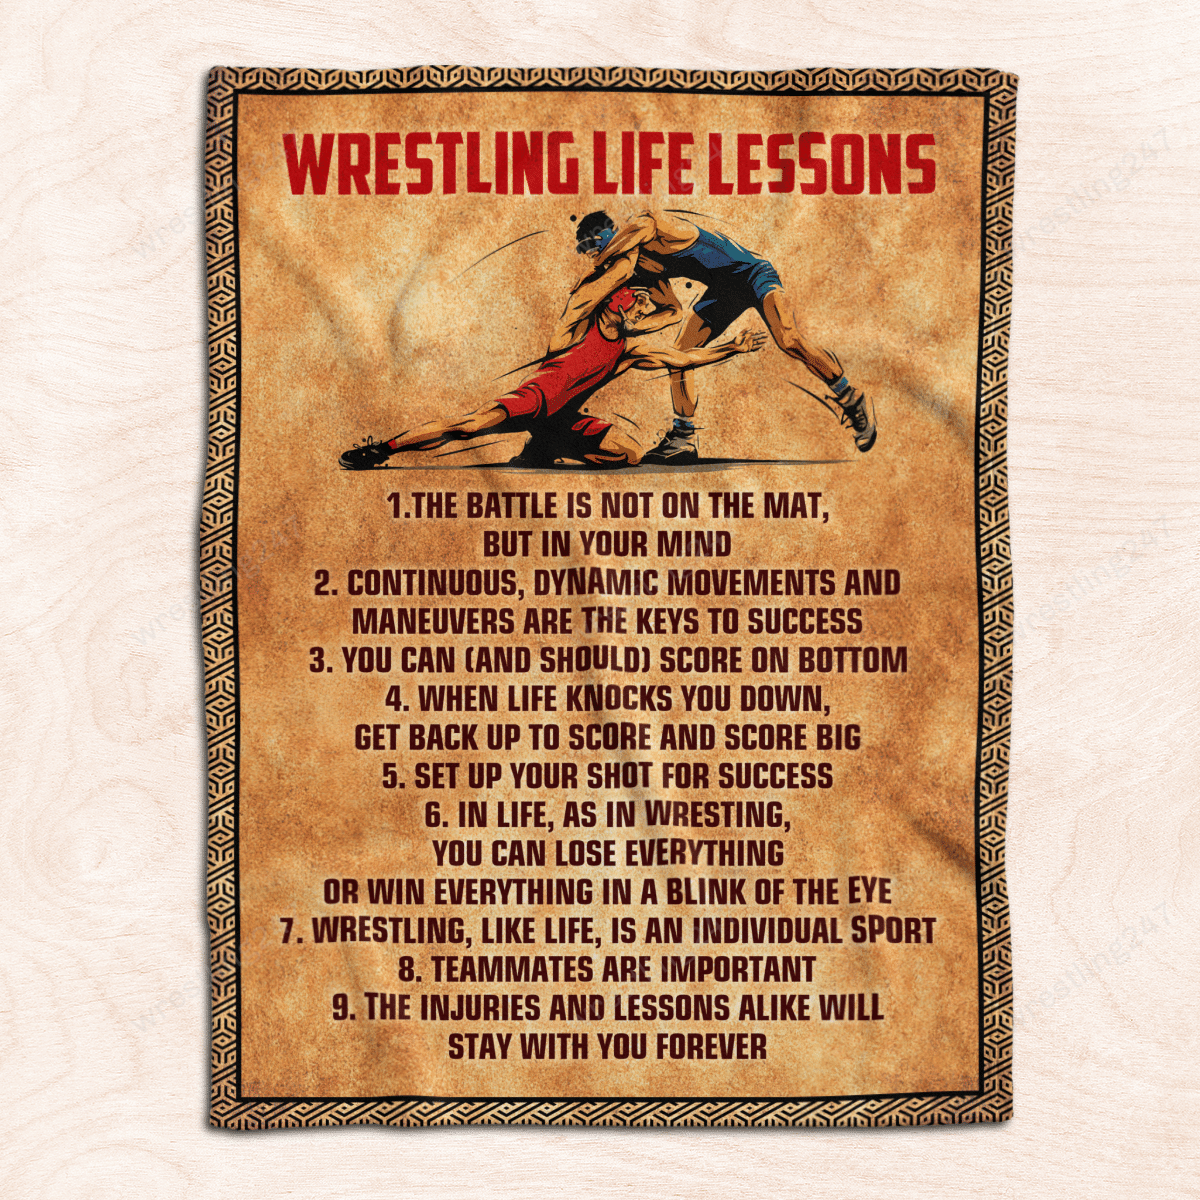 Wrestling life lessons fleece blanket 1